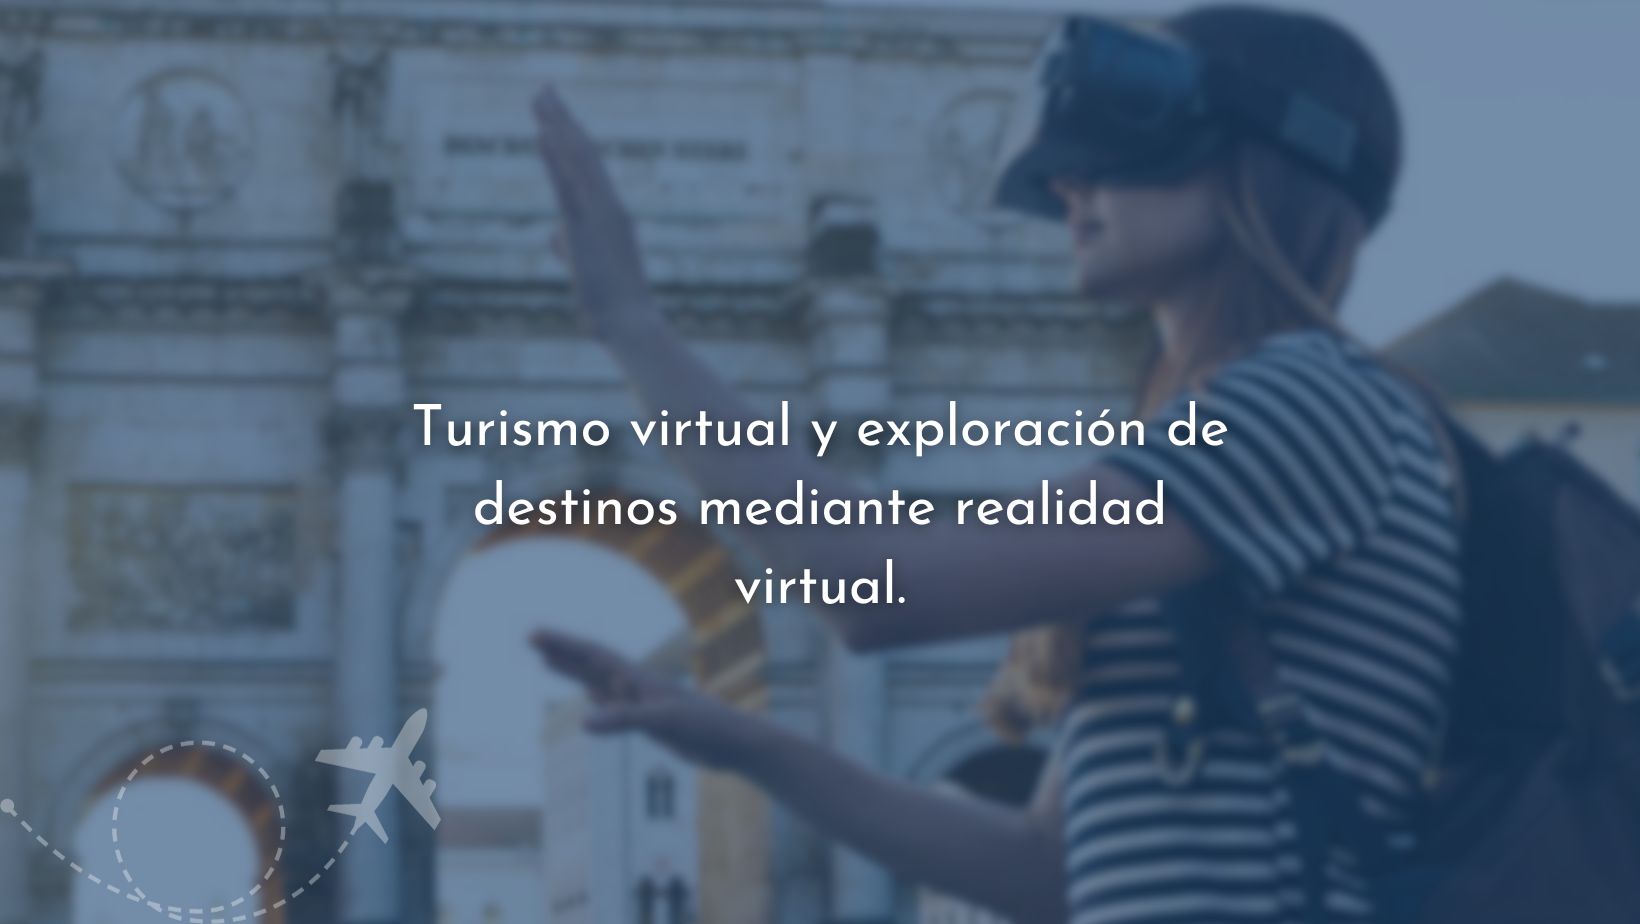 Turismo virtual y exploración de destinos mediante realidad virtual.